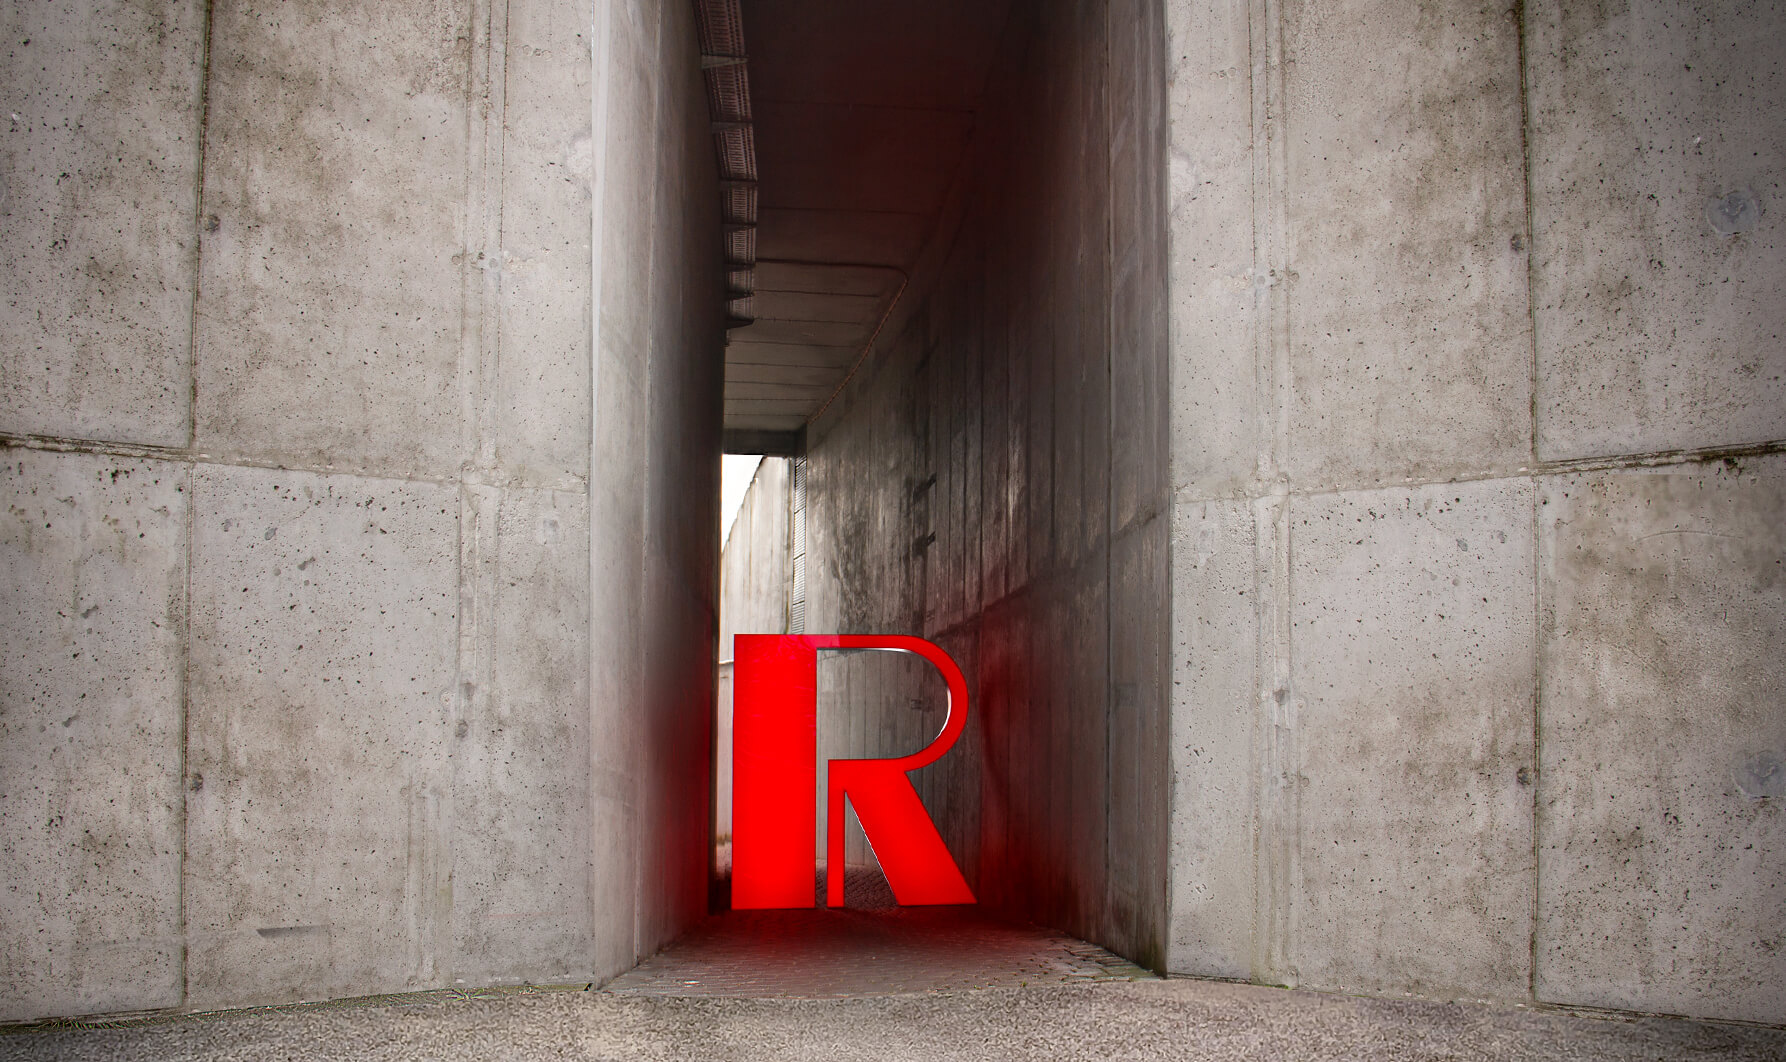 Lettera rossa R - Lettera R di grande formato in rosso su una parete di cemento, illuminata a LED.